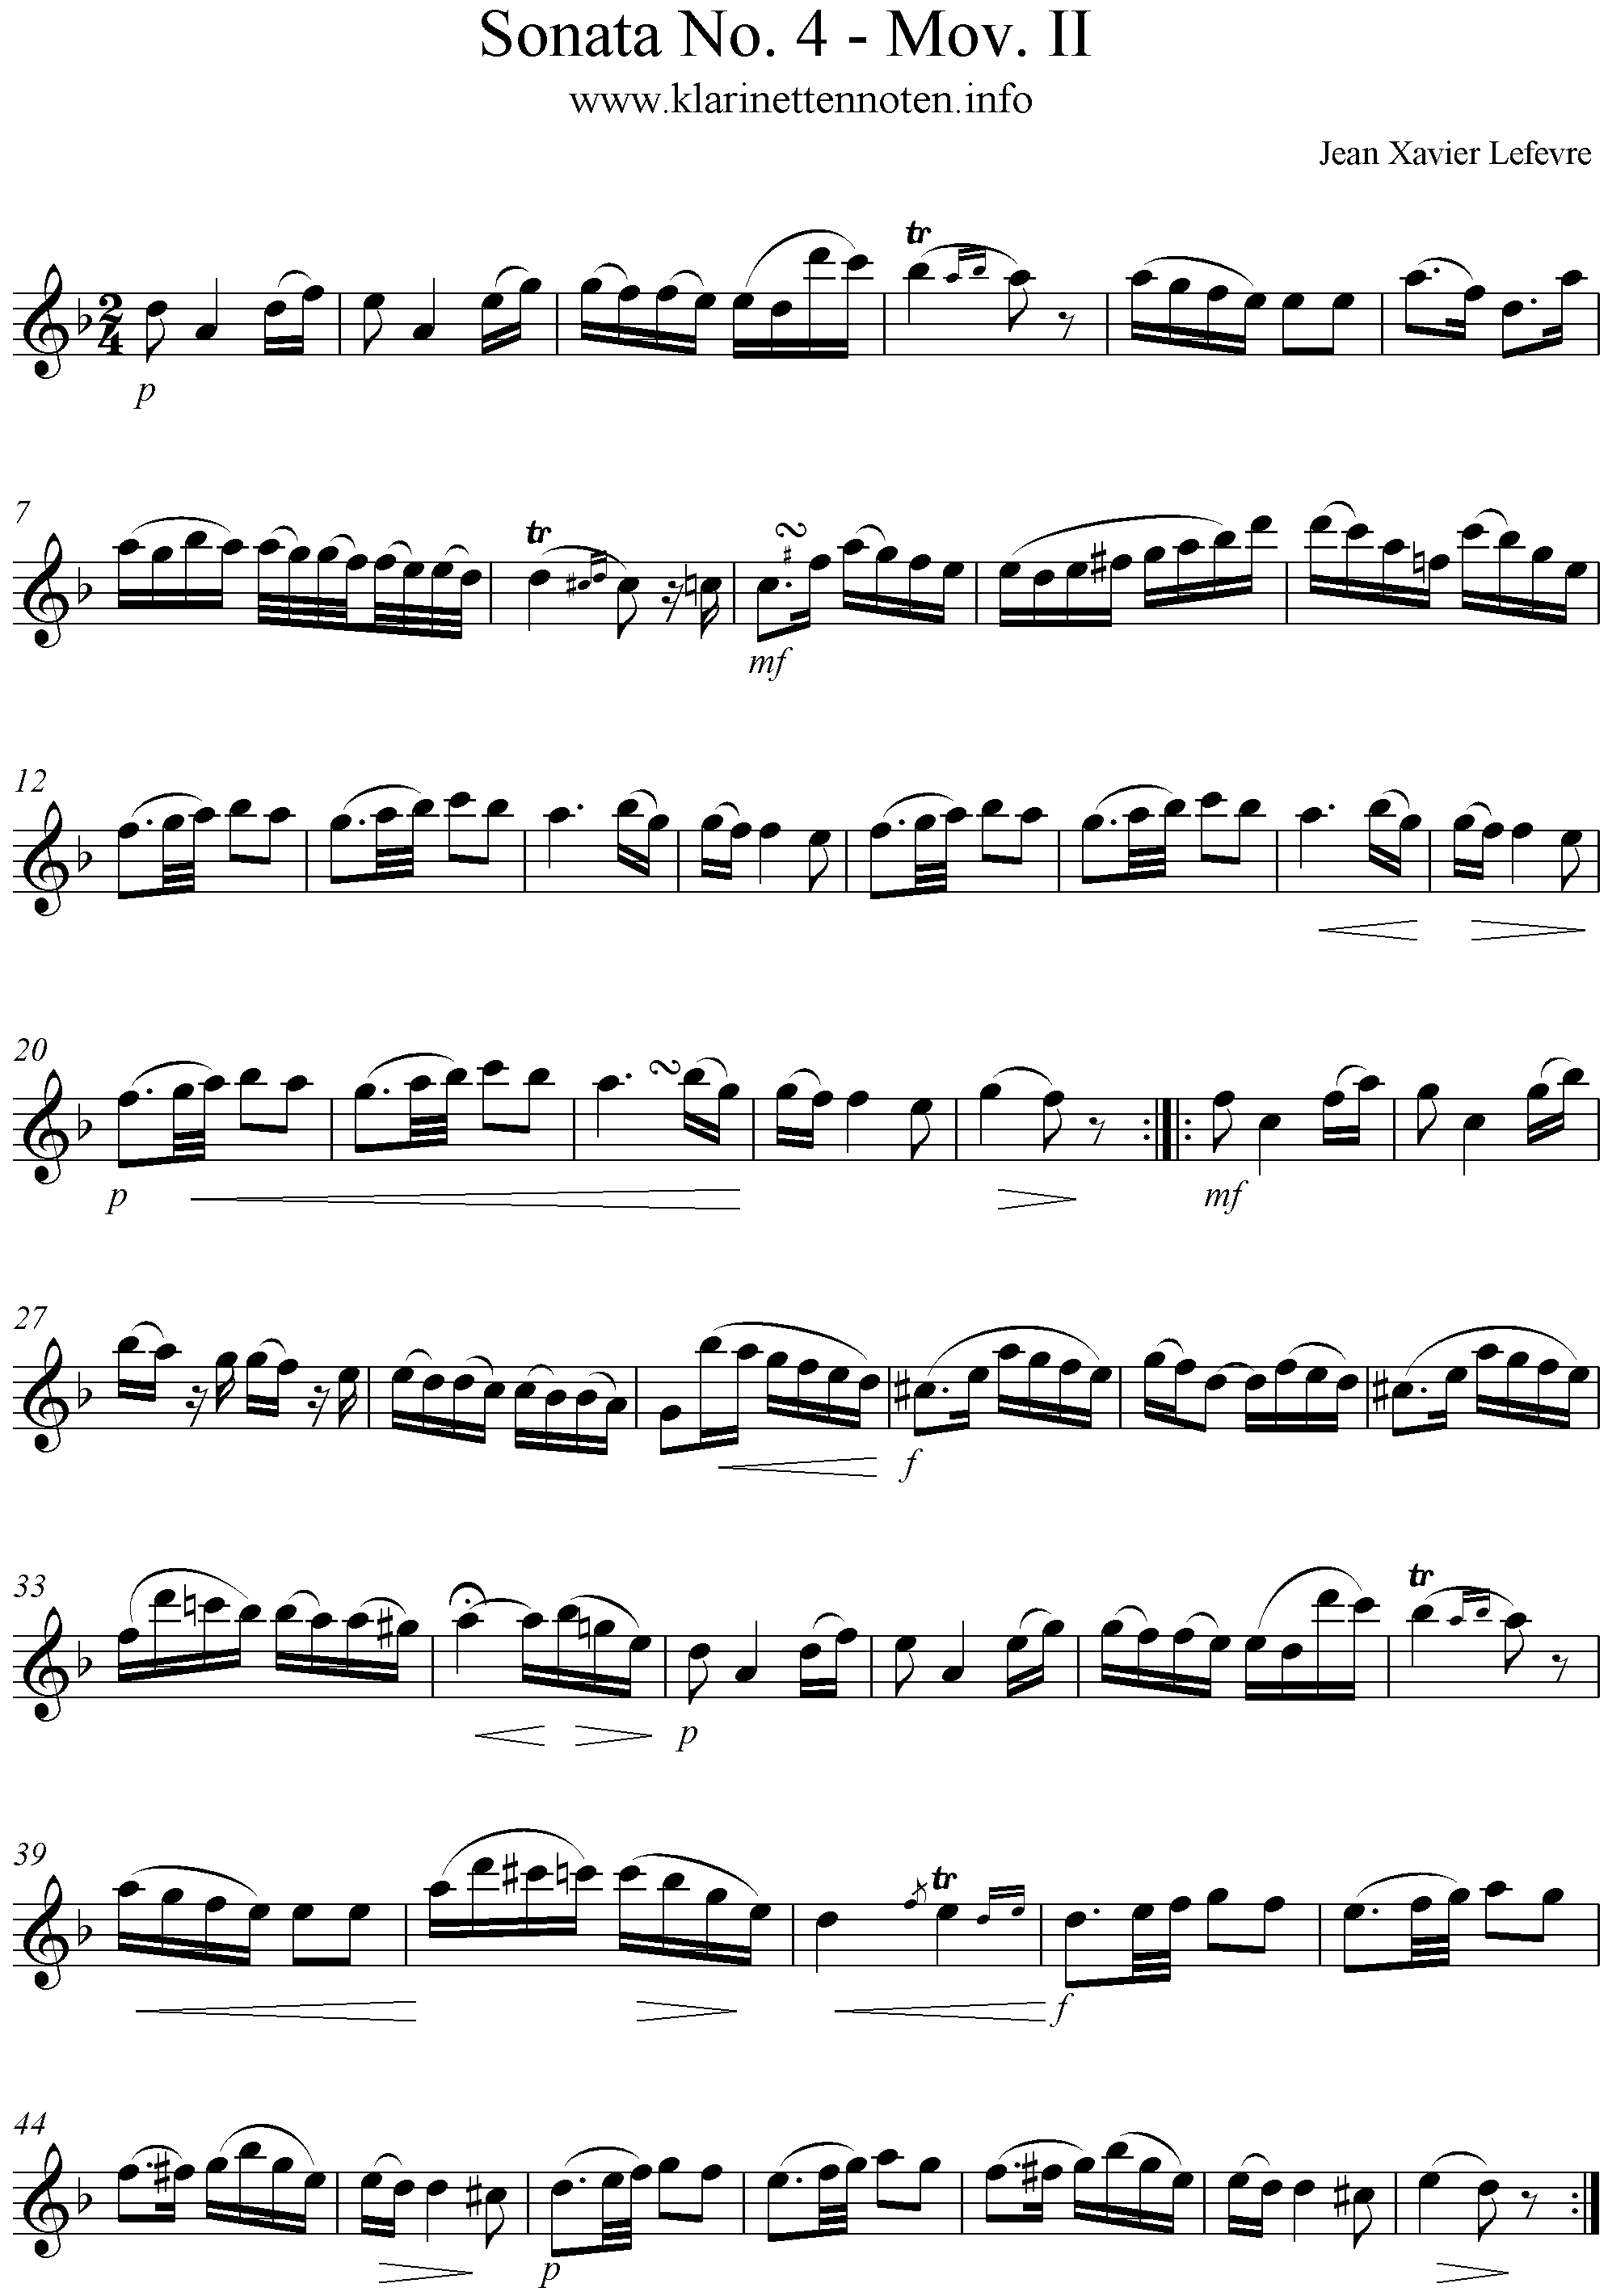 Lefevre Sonata 4 Mov. II - Adagio